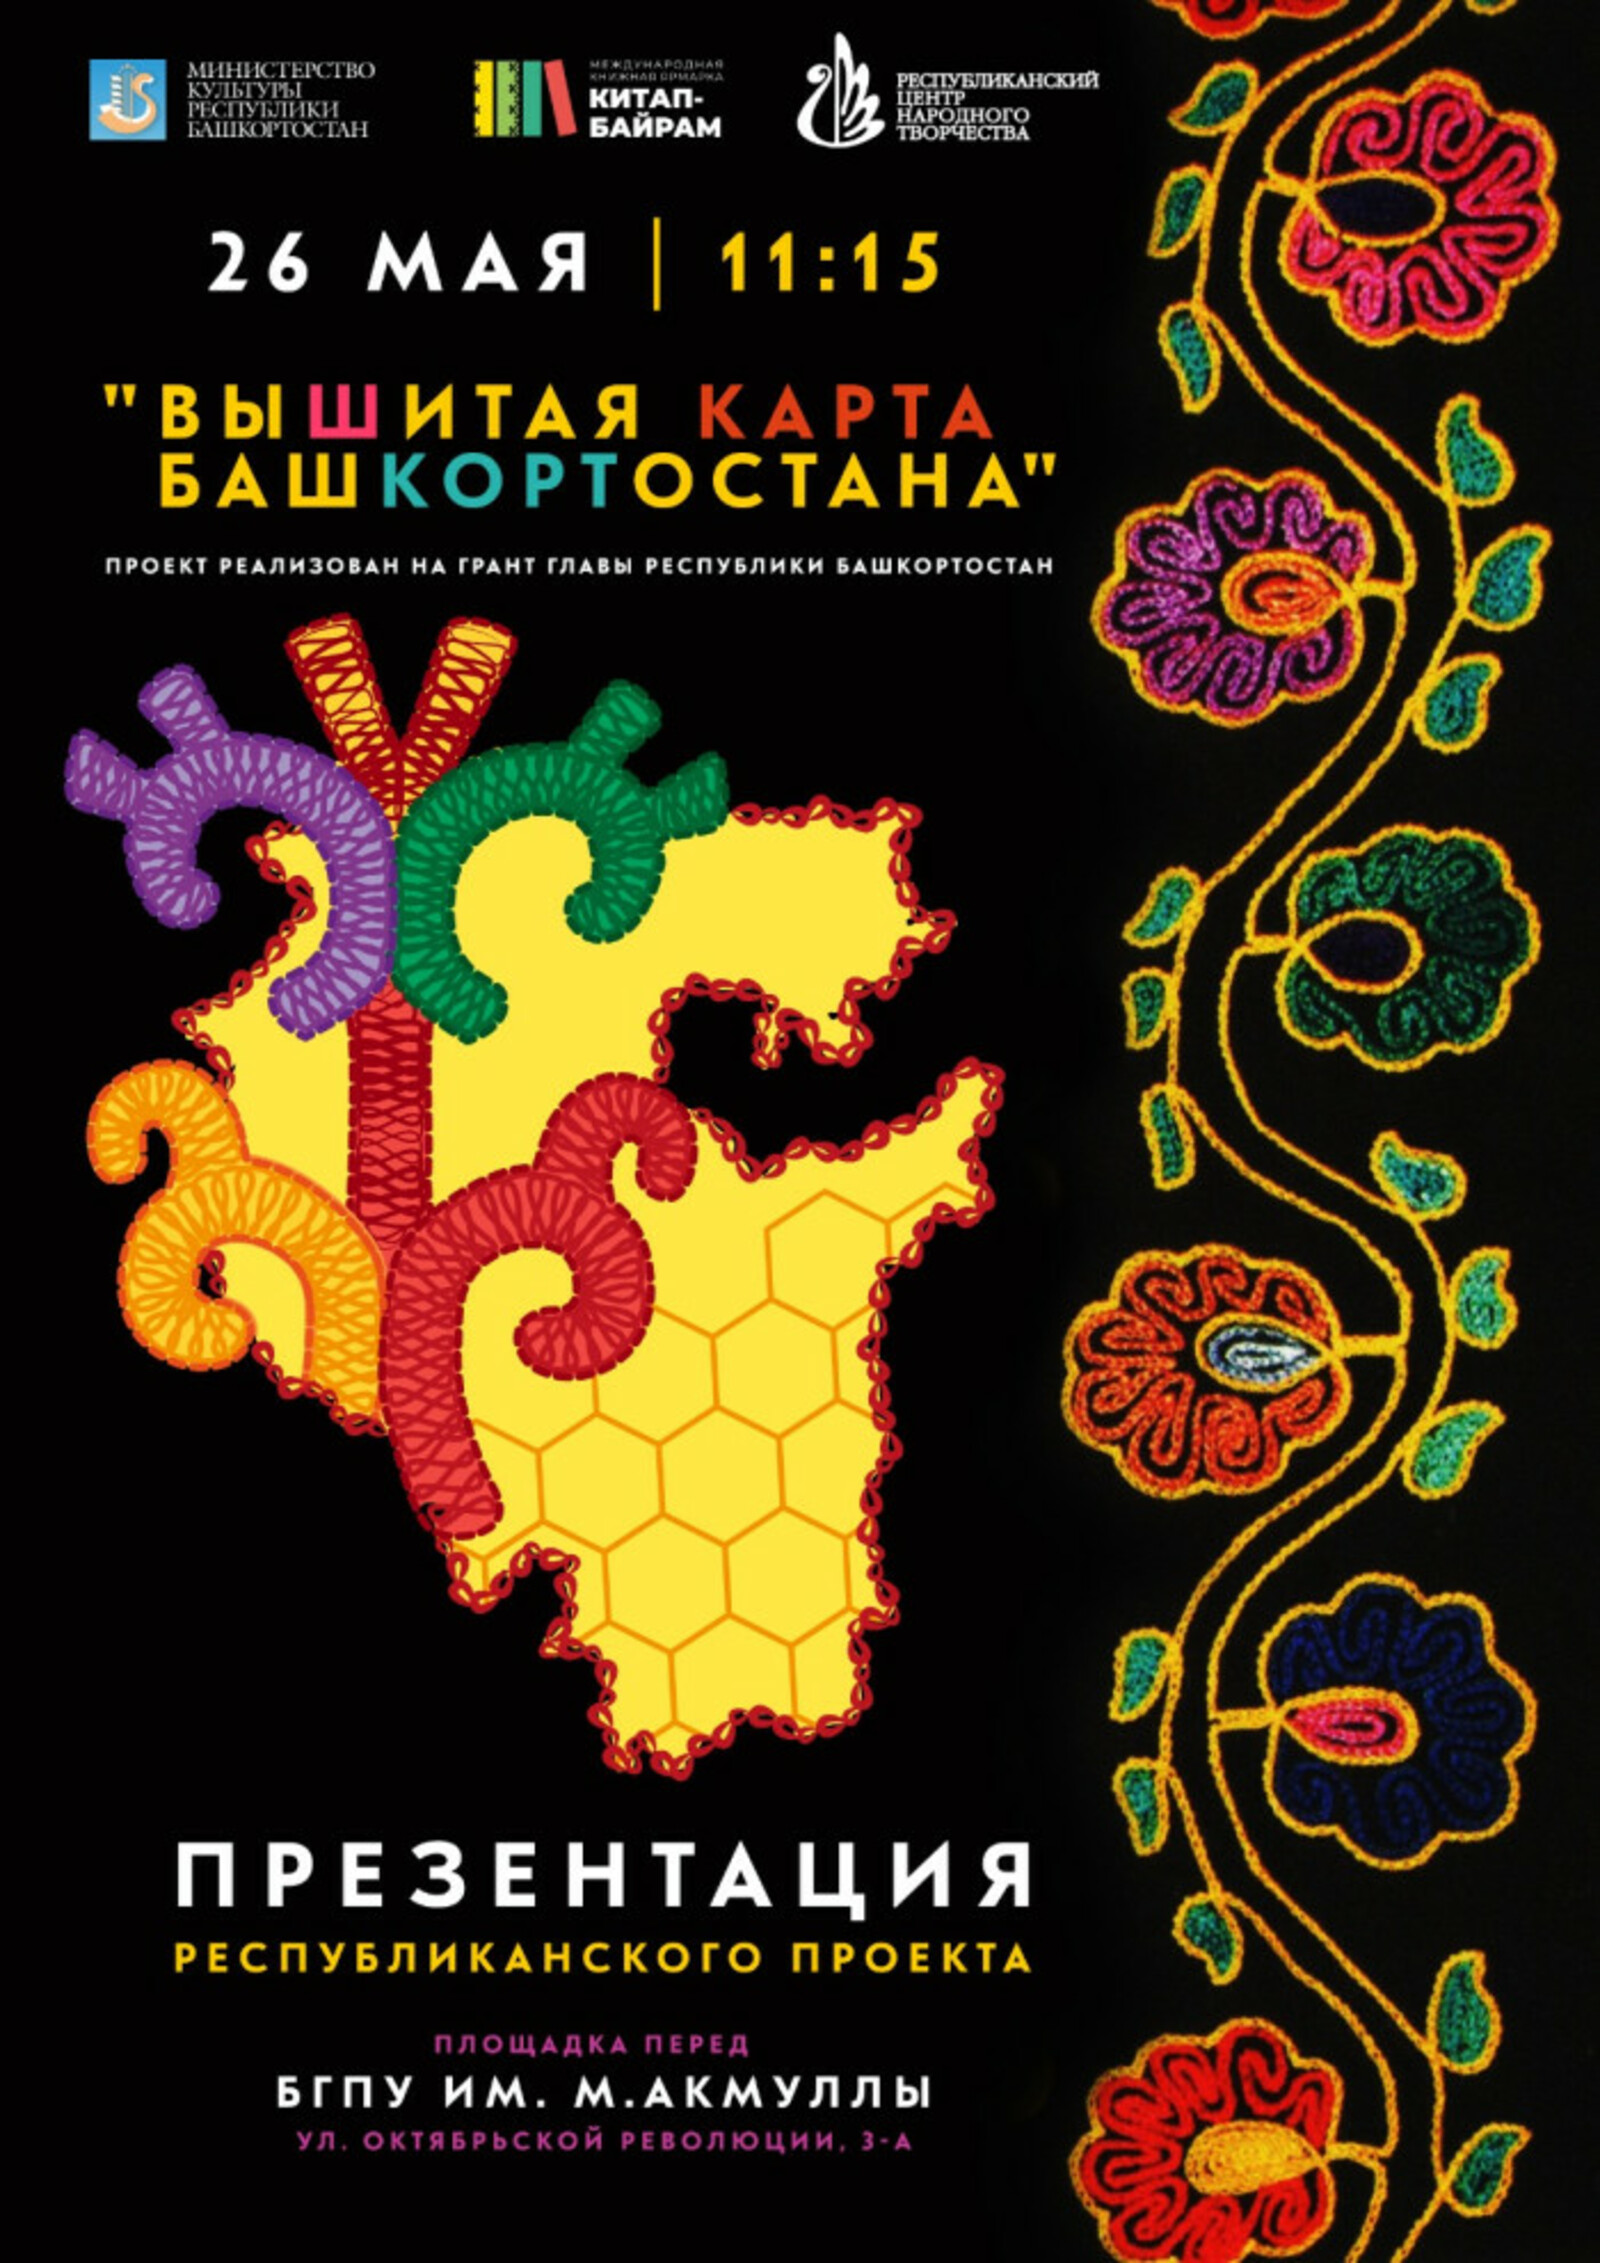 В Уфе в рамках презентации проекта «Вышитая карта Башкортостана» состоится семинар по вышивке